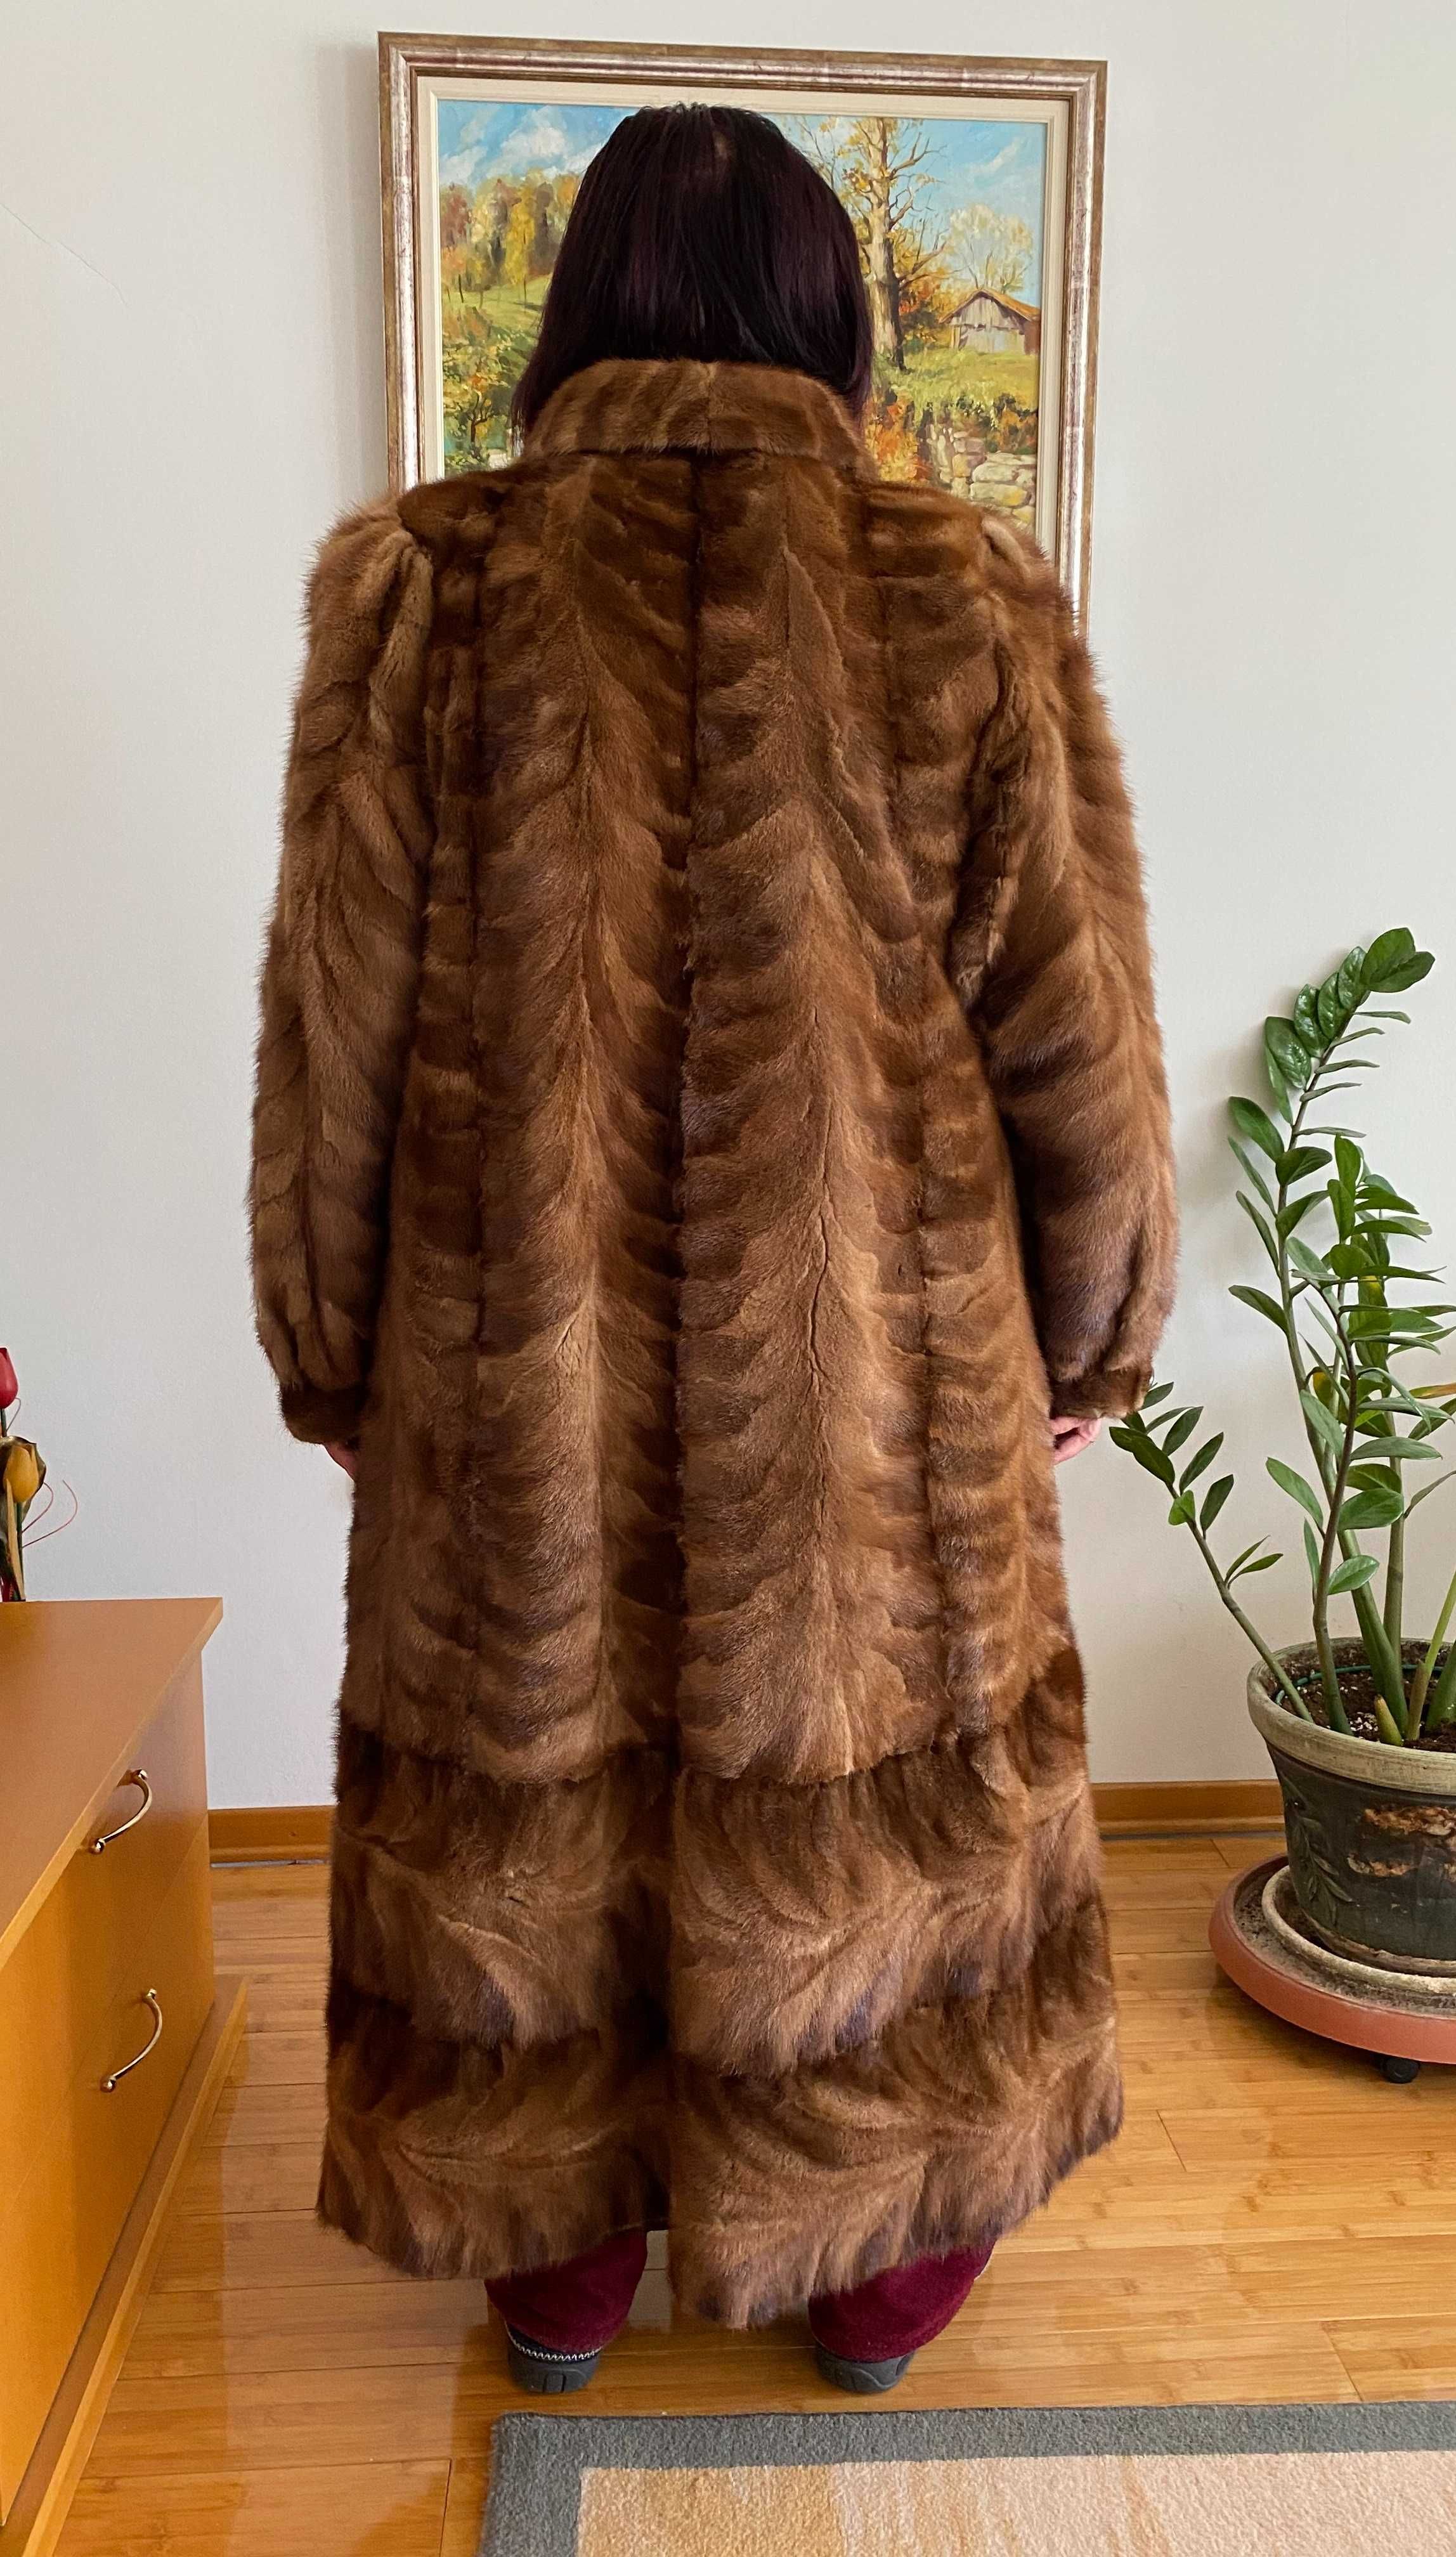 Дамско пaлто от Визон кожа - 600 лв. (по договаряне)